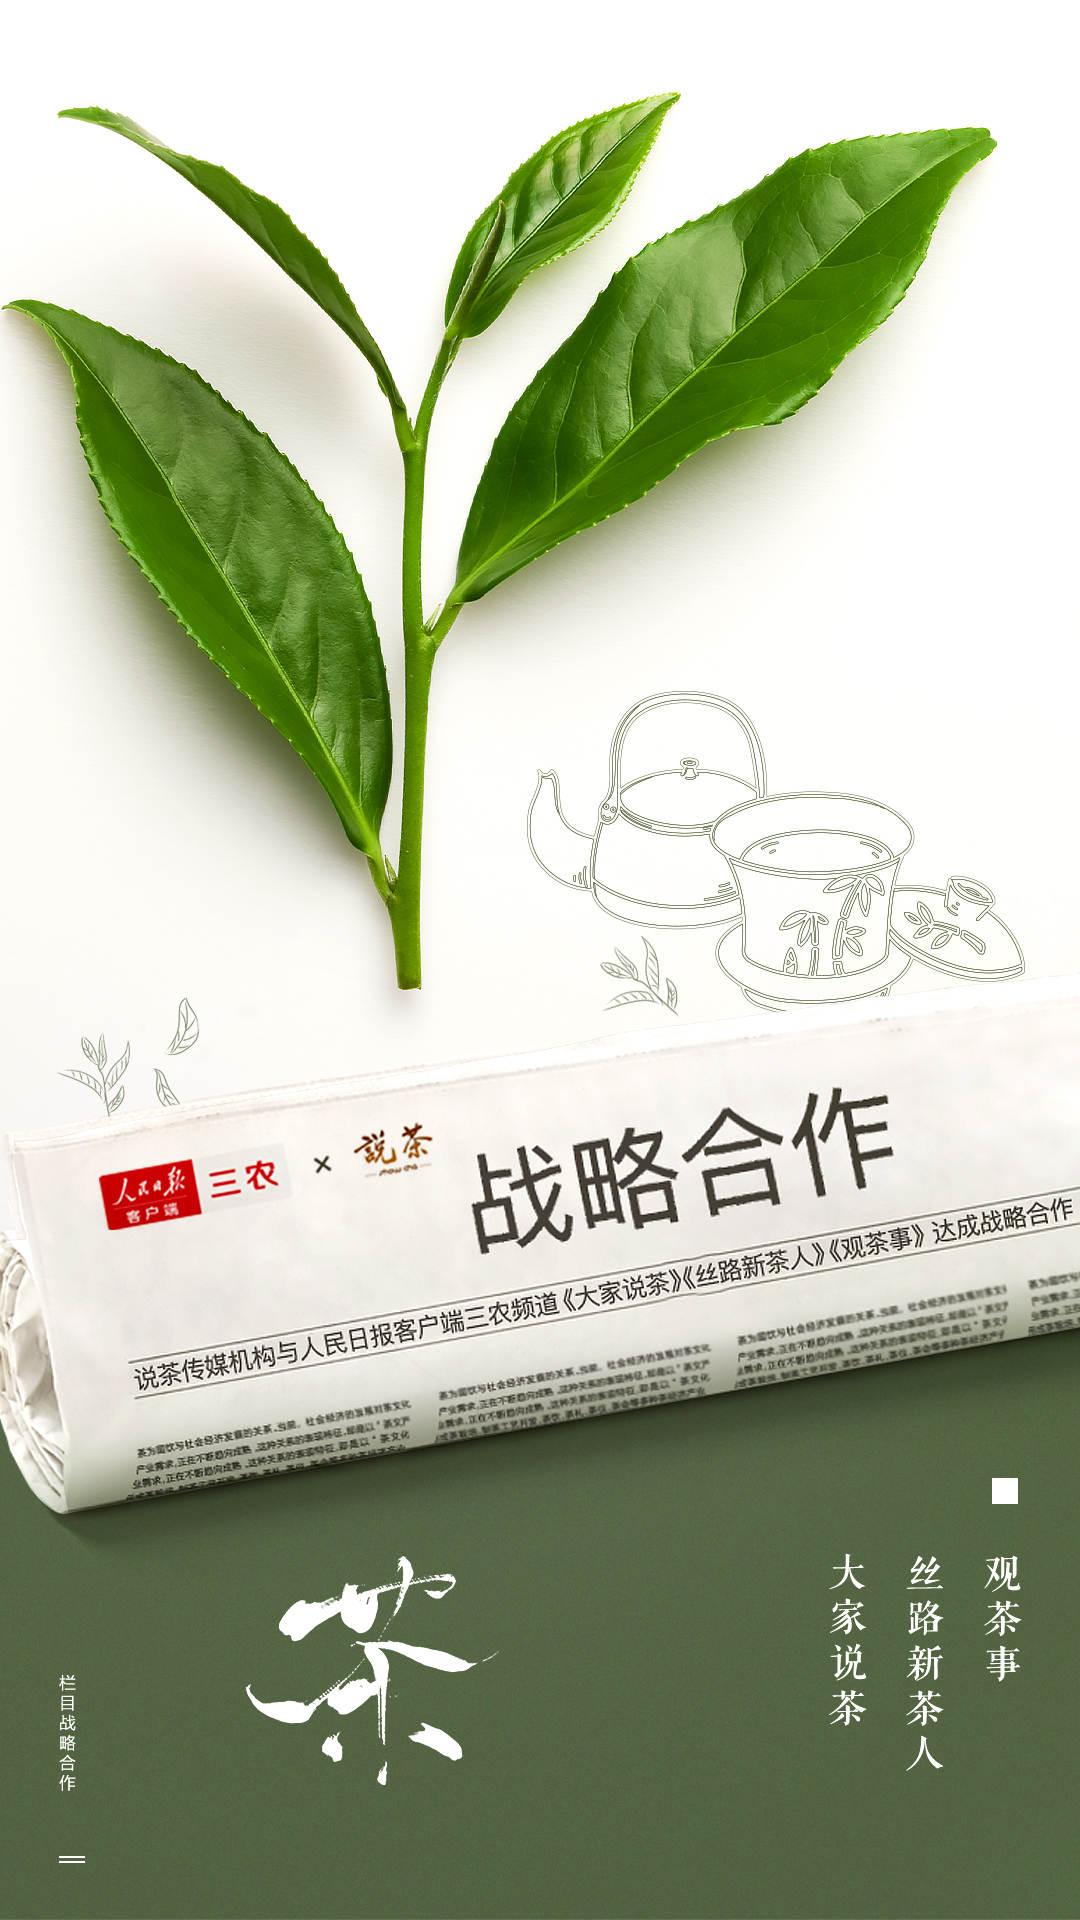 好茶排行榜_推荐|中国有好茶“为中国说好茶”系列专题即将上线